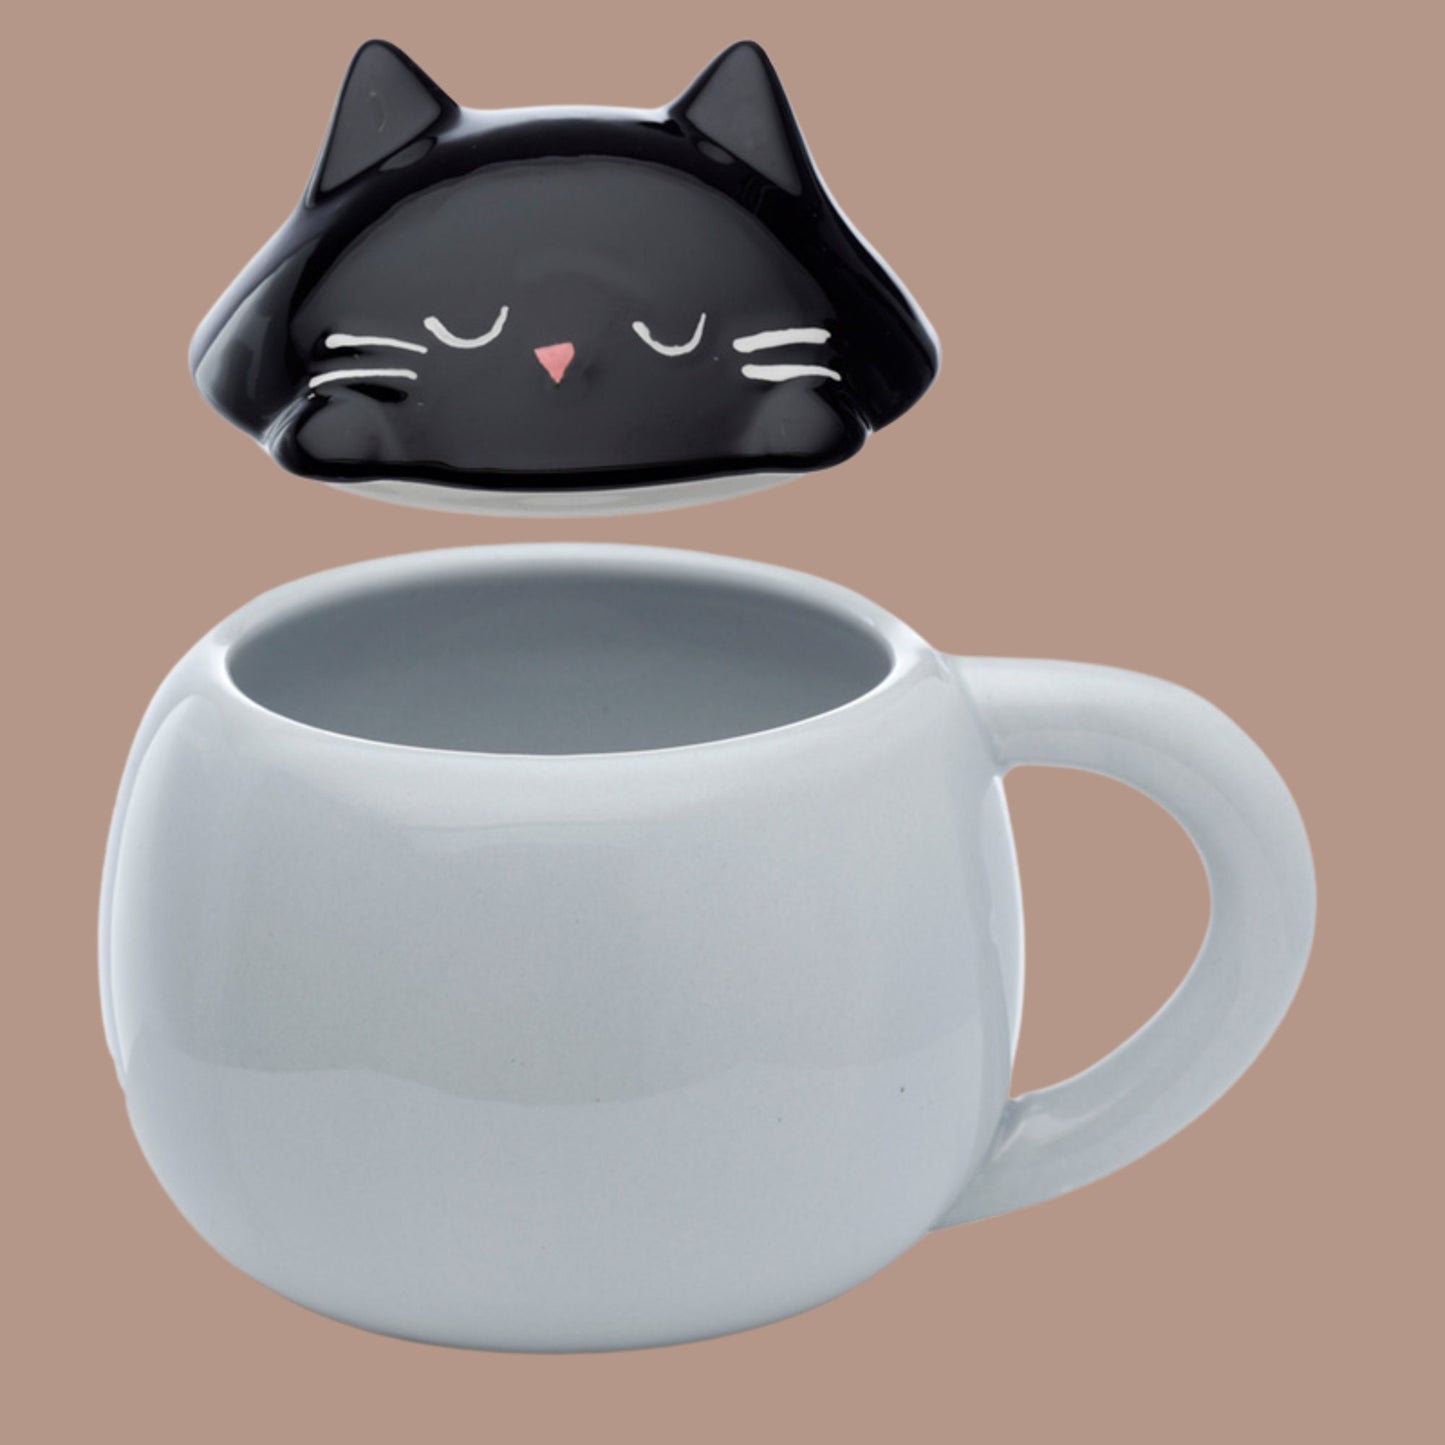 Cute Cat Lidded Mug Ceramic Lidded Cat Mug Animal Mug Feline Lover Gift Mug Family Pet Present Fun Peeping Cat Coffee Cup Fun Cat Present